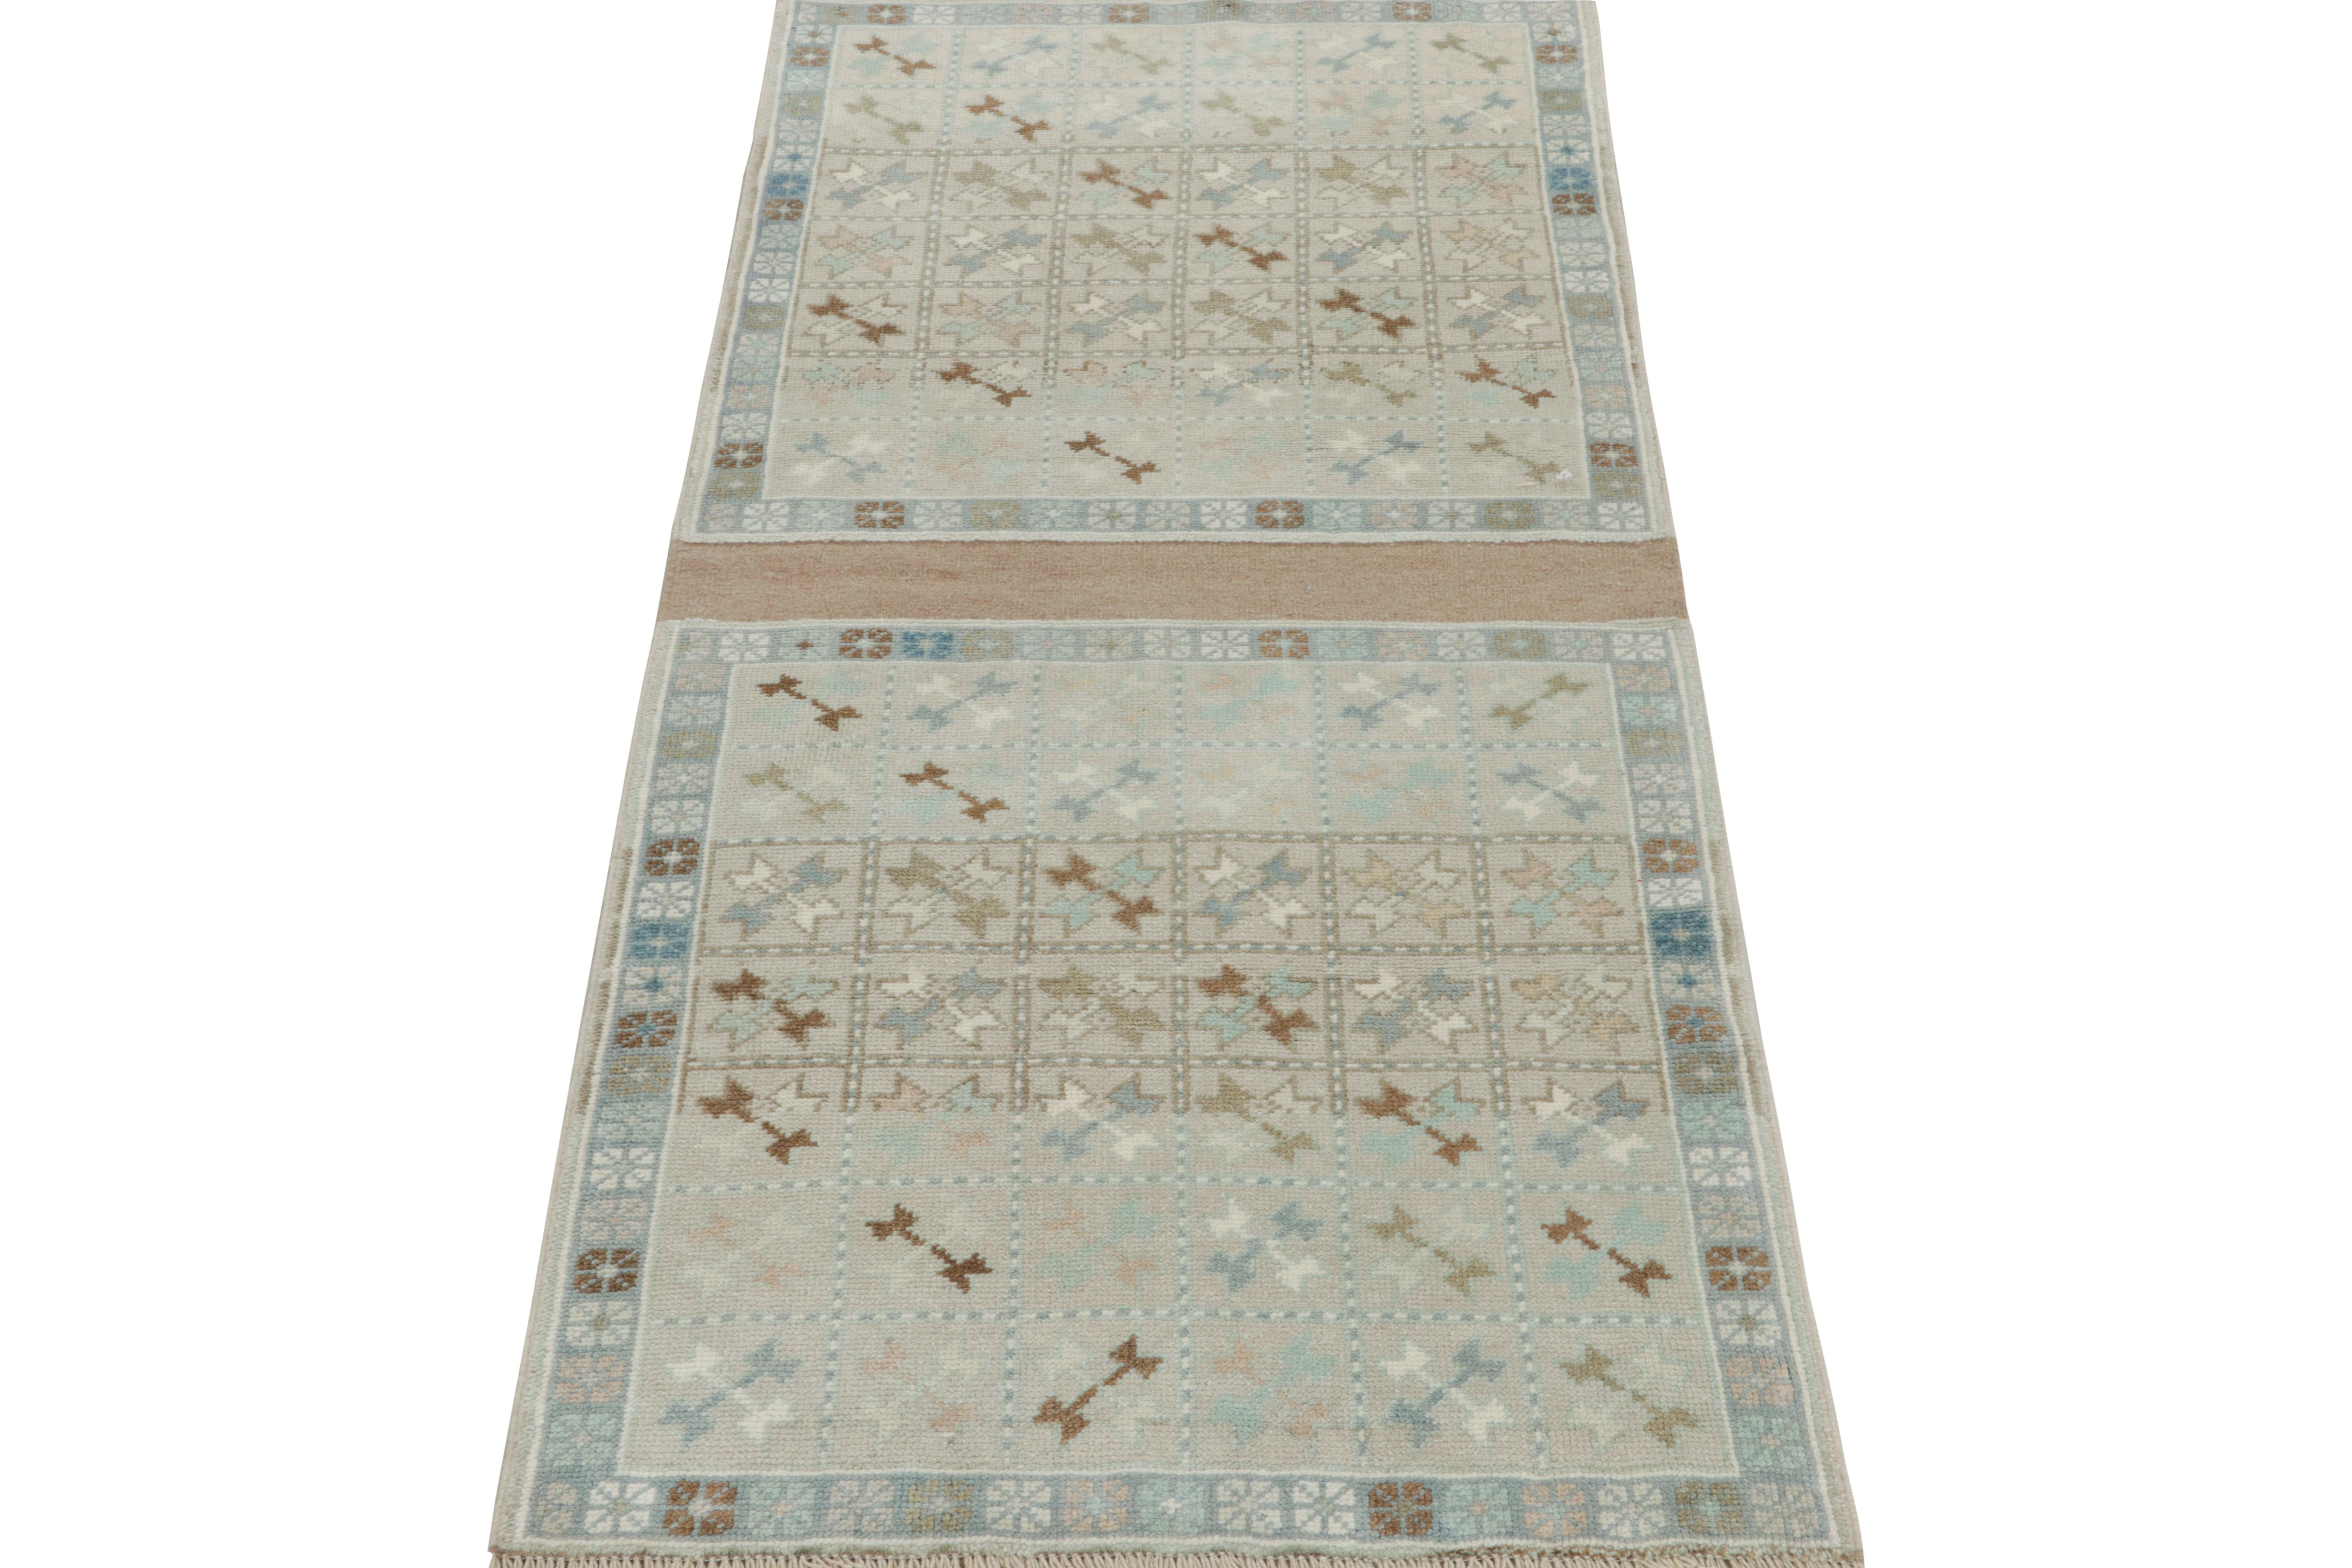 Ce tapis tribal vintage 3x6 est un ajout unique aux collections classiques de Rug & Kilim. Noué à la main en laine, il provient de Turquie vers 1950-1960. 

Plus loin dans le Design : 

Les yeux attentifs remarqueront que cette pièce est composée de